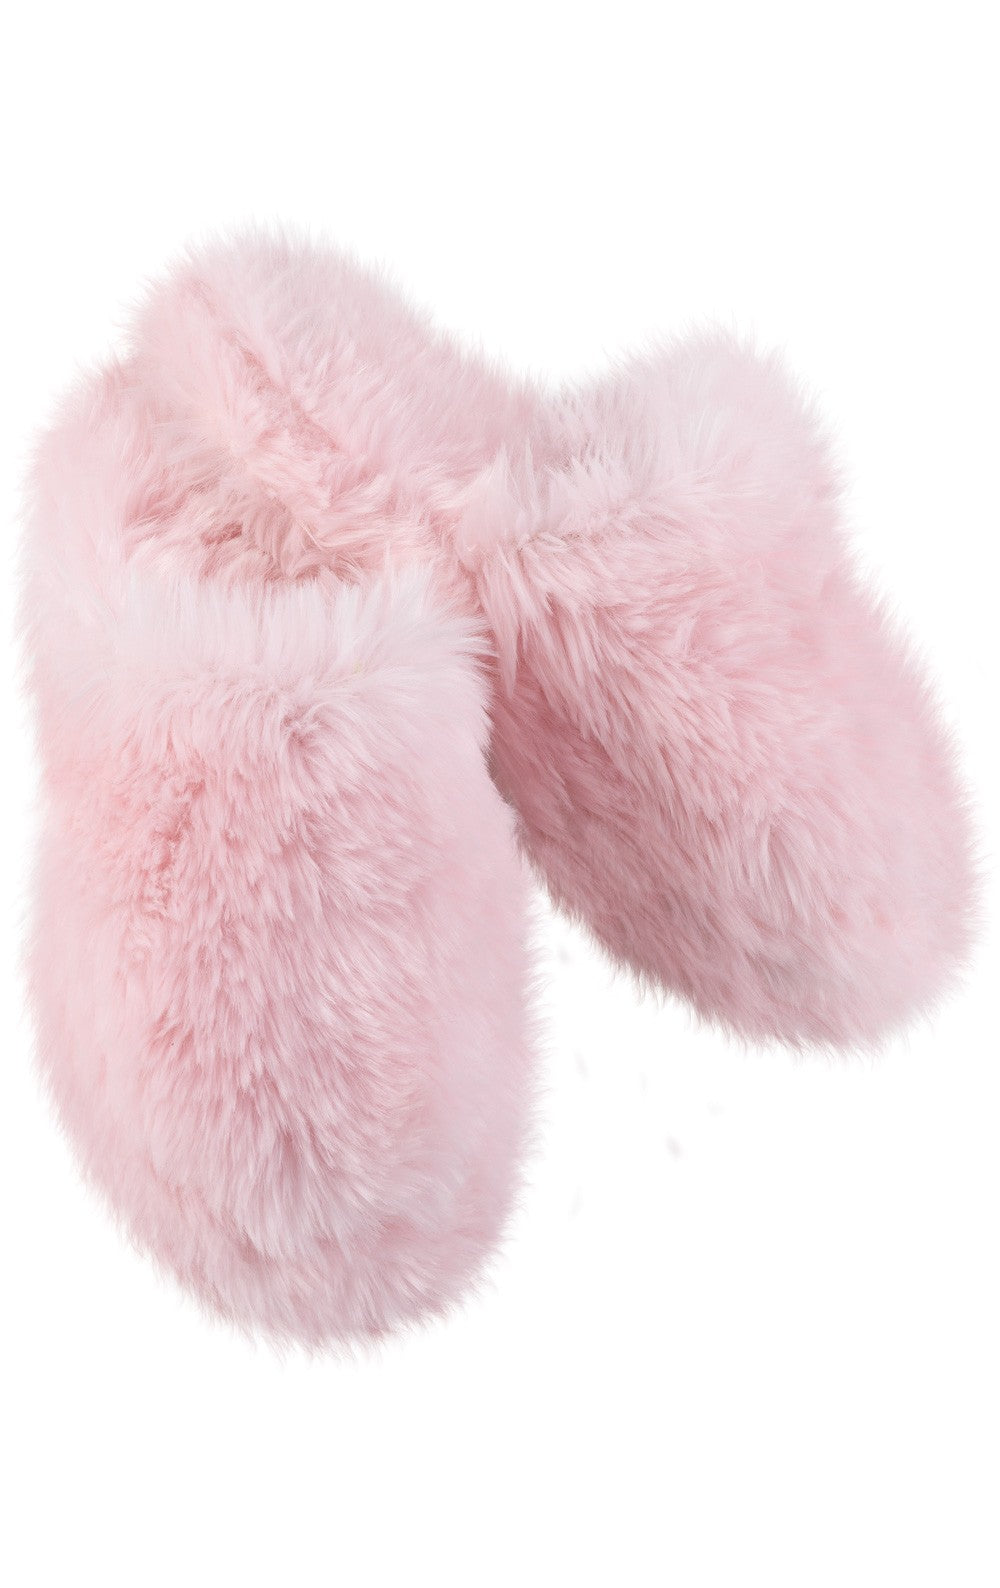 Pink Fuzzy Wuzzies